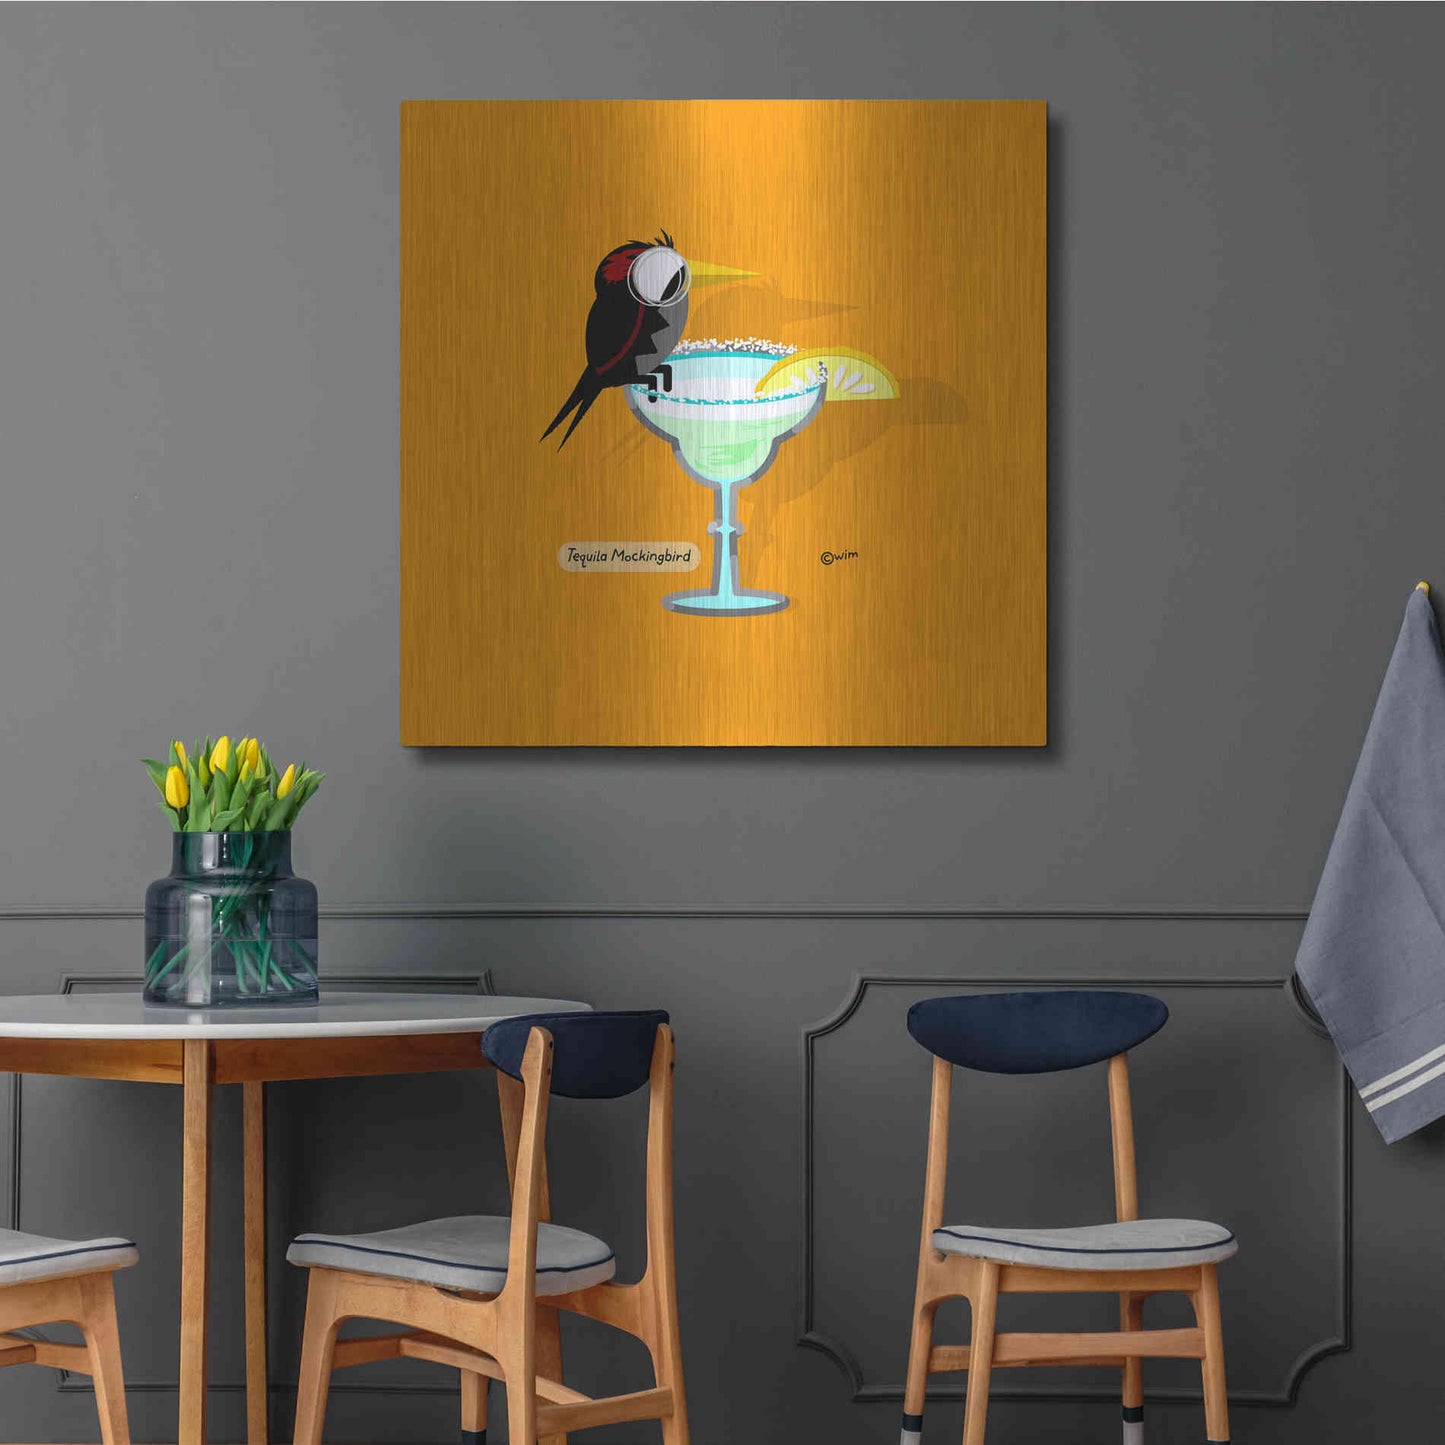 Luxe Metal Art 'Tequila Mockingbird' by Chuck Wimmer, Metal Wall Art,36x36